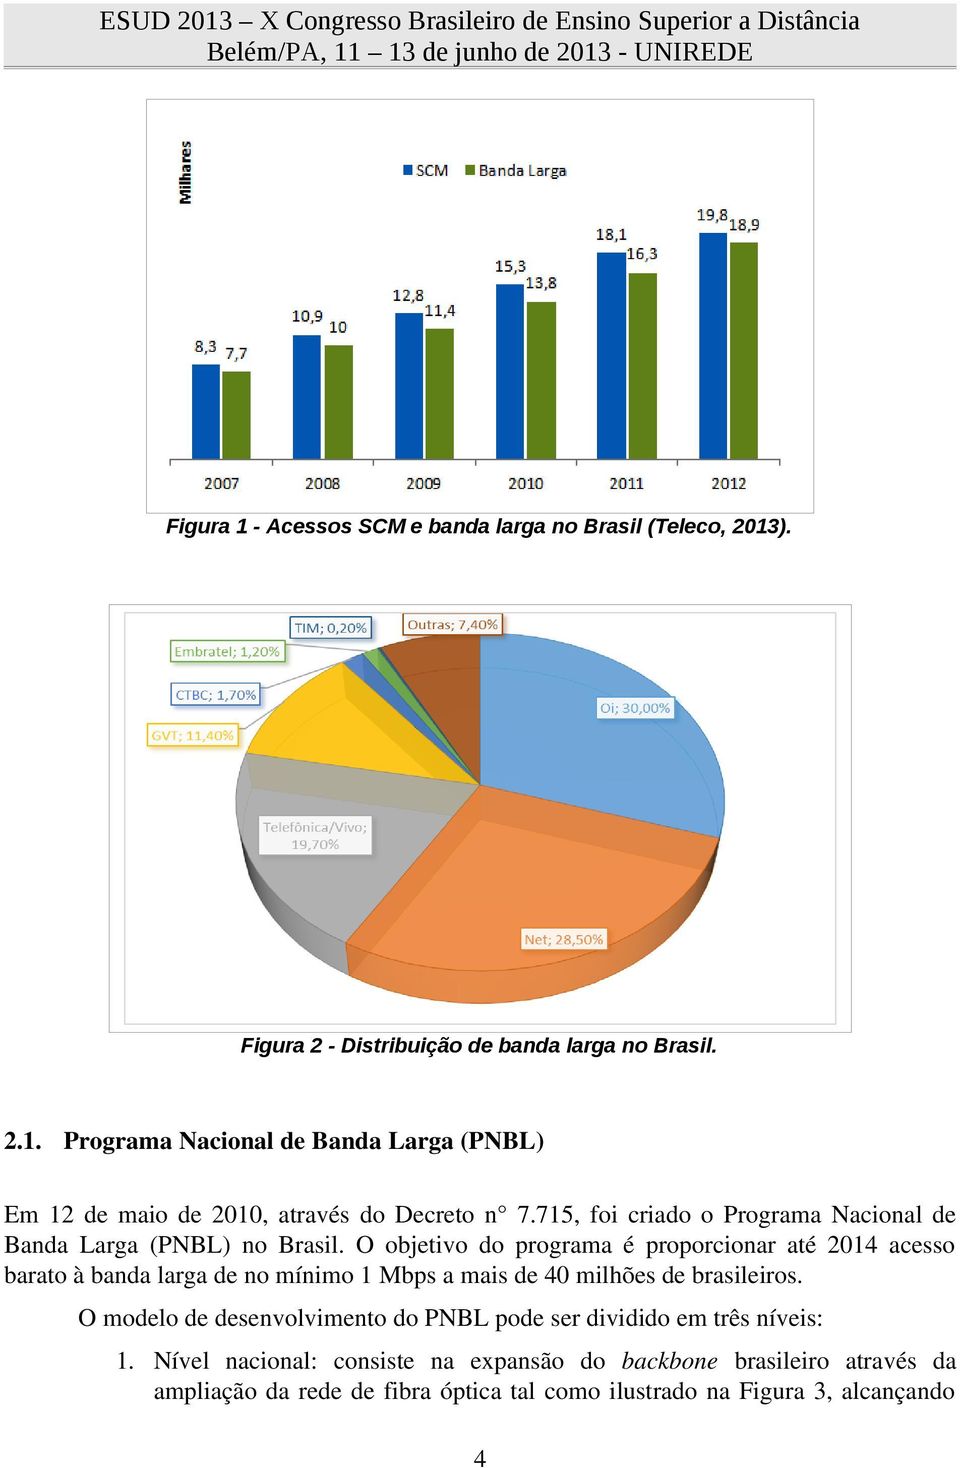 O objetivo do programa é proporcionar até 2014 acesso barato à banda larga de no mínimo 1 Mbps a mais de 40 milhões de brasileiros.